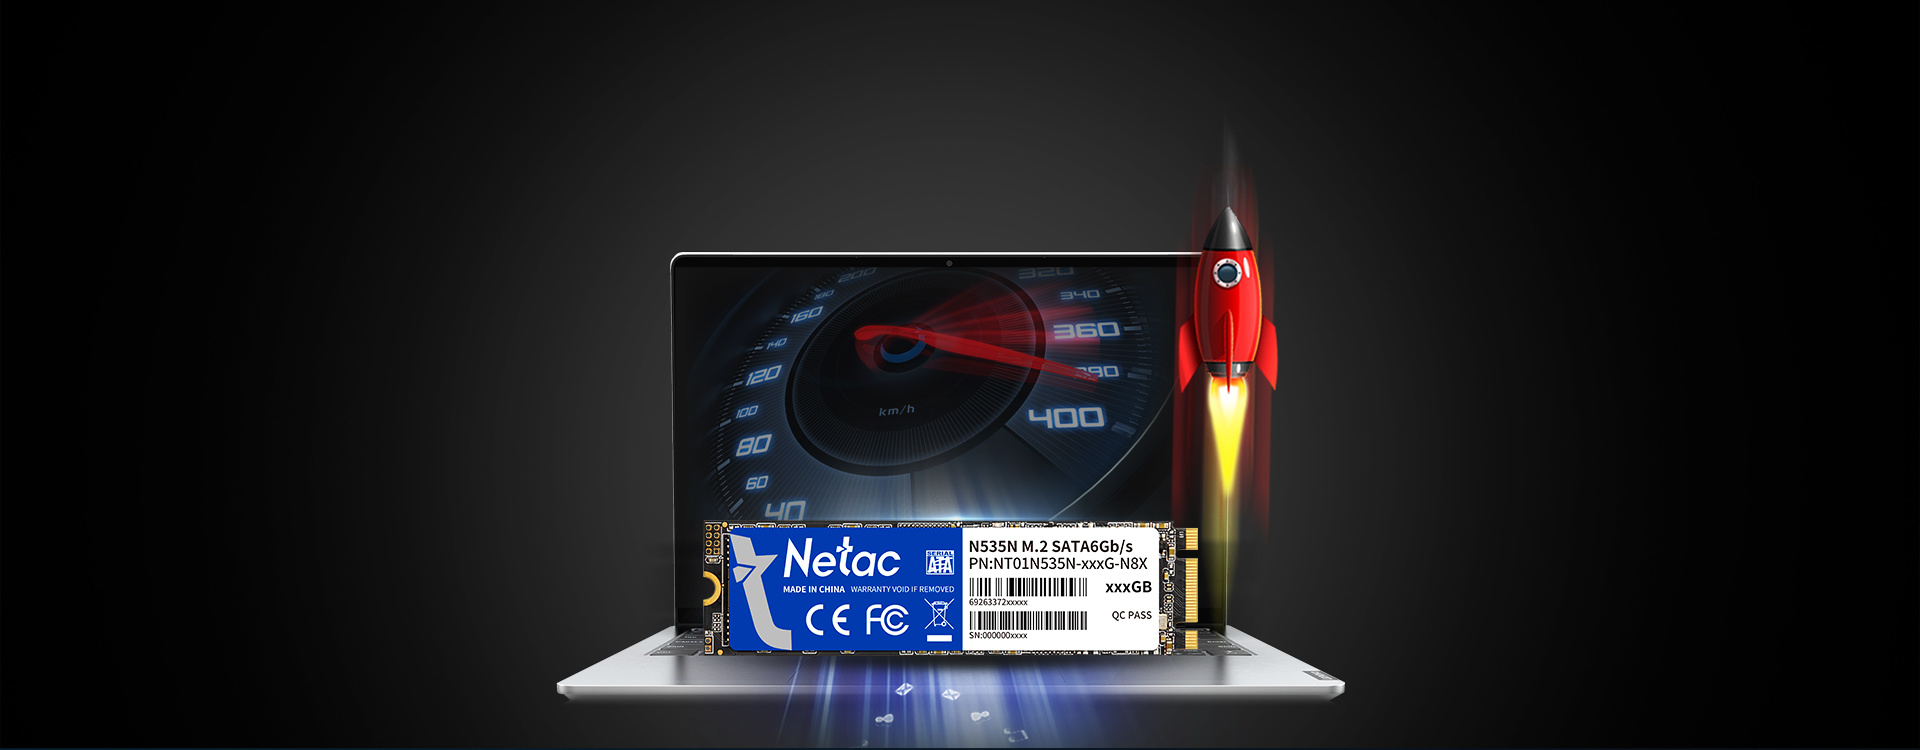 Netac N535N